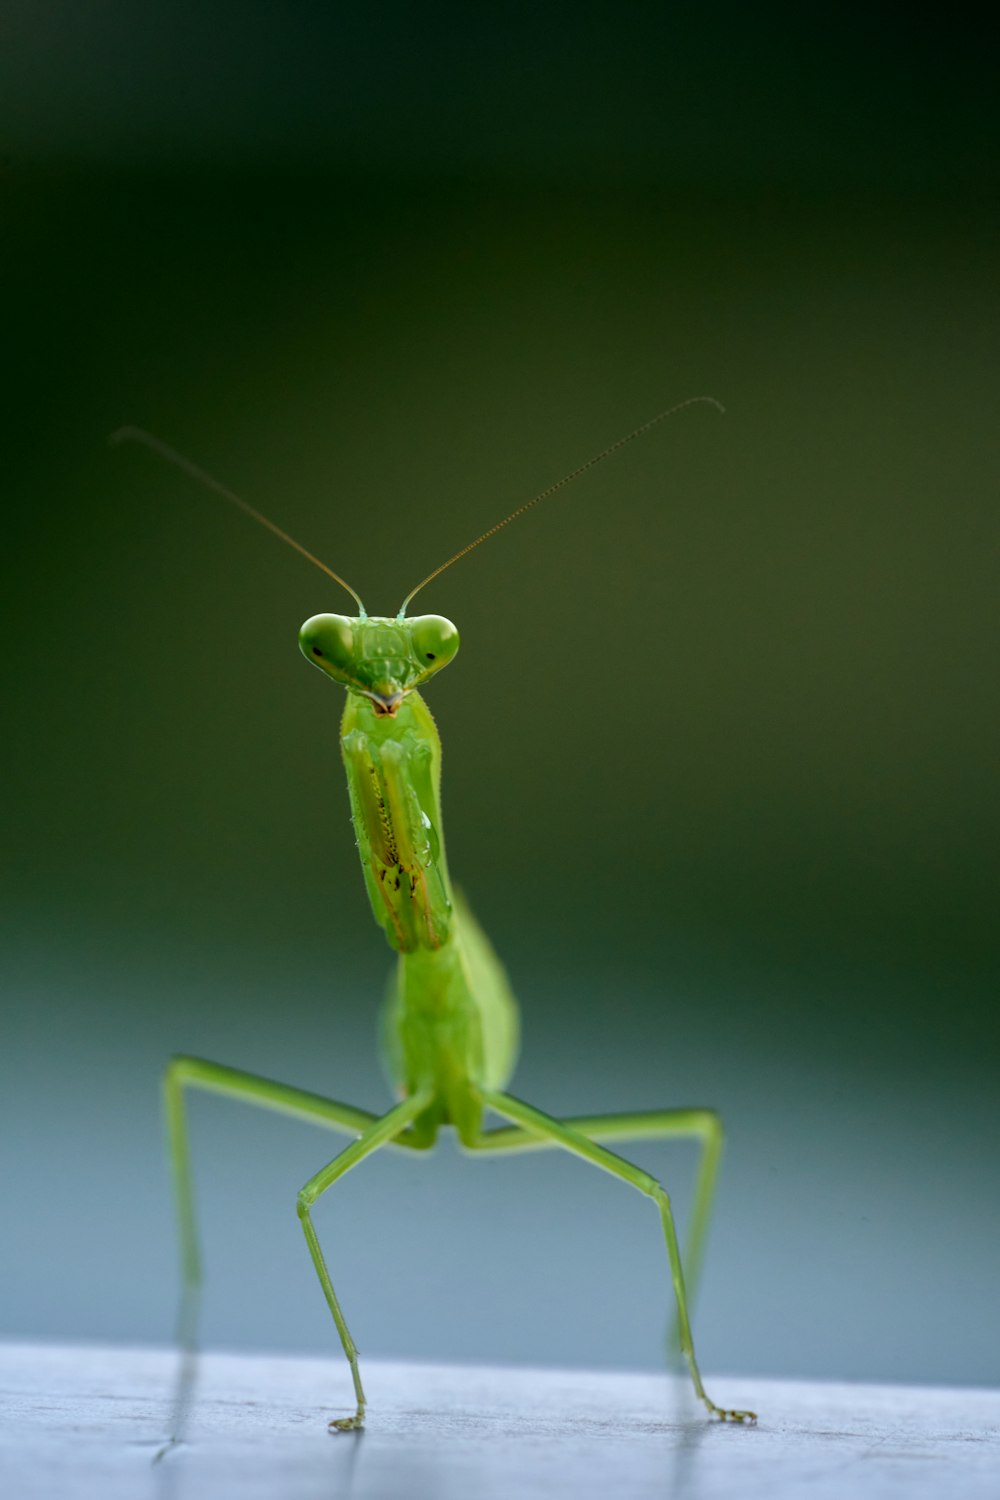 um inseto verde com antenas longas